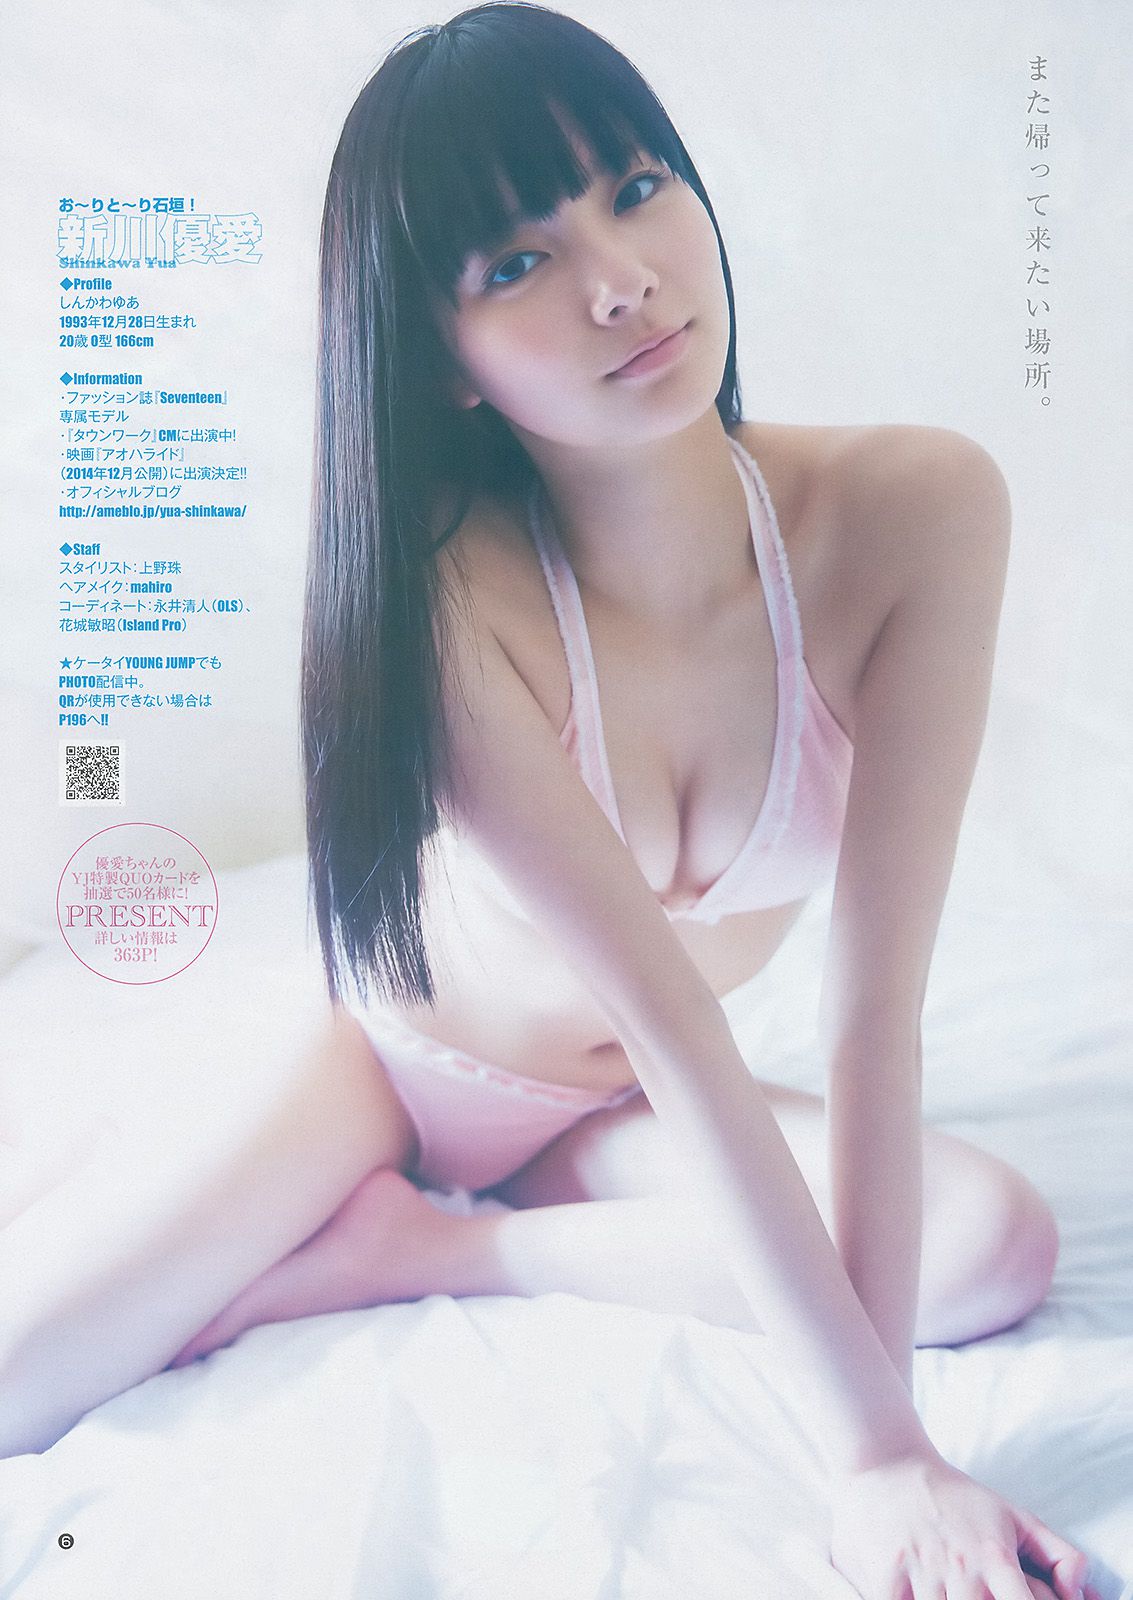 Yua Shinkawa Mizuki Kimoto Collection Ultimate 2014 [Weekly Young Jump] 2014 No.21-22 Photo Magazine หน้า 22 No.a7cd50